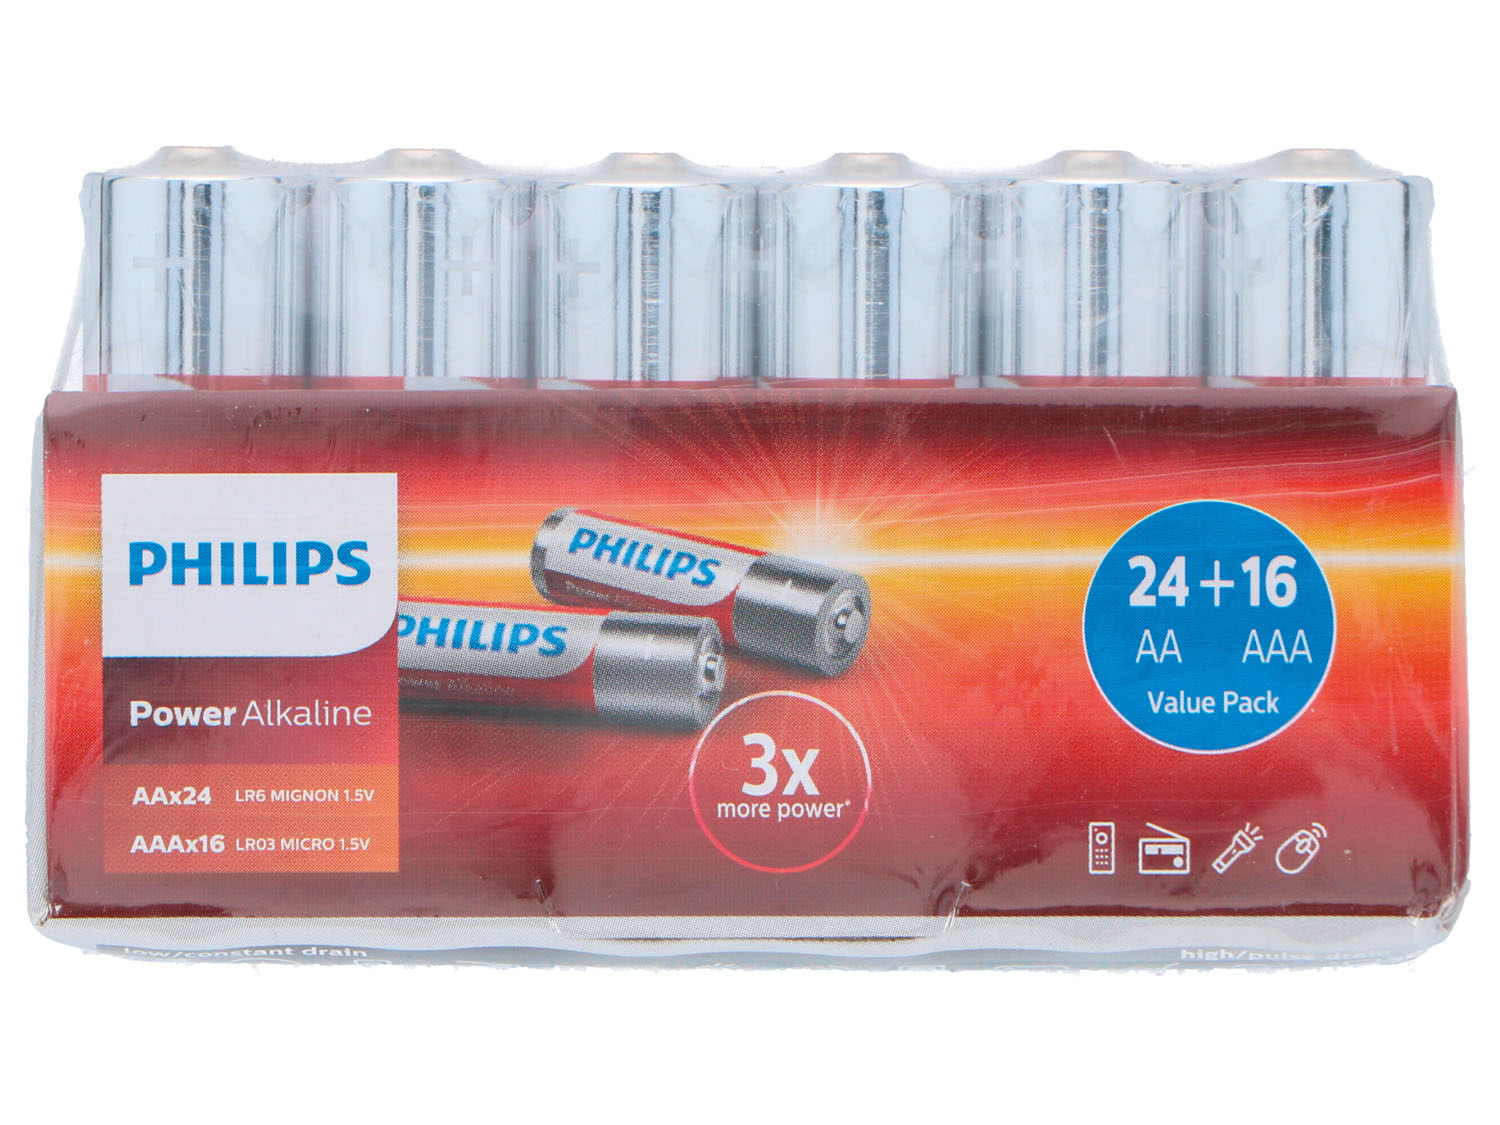 datum ophouden binden PHILIPS Multipack batterijen online kopen op Lidl.be